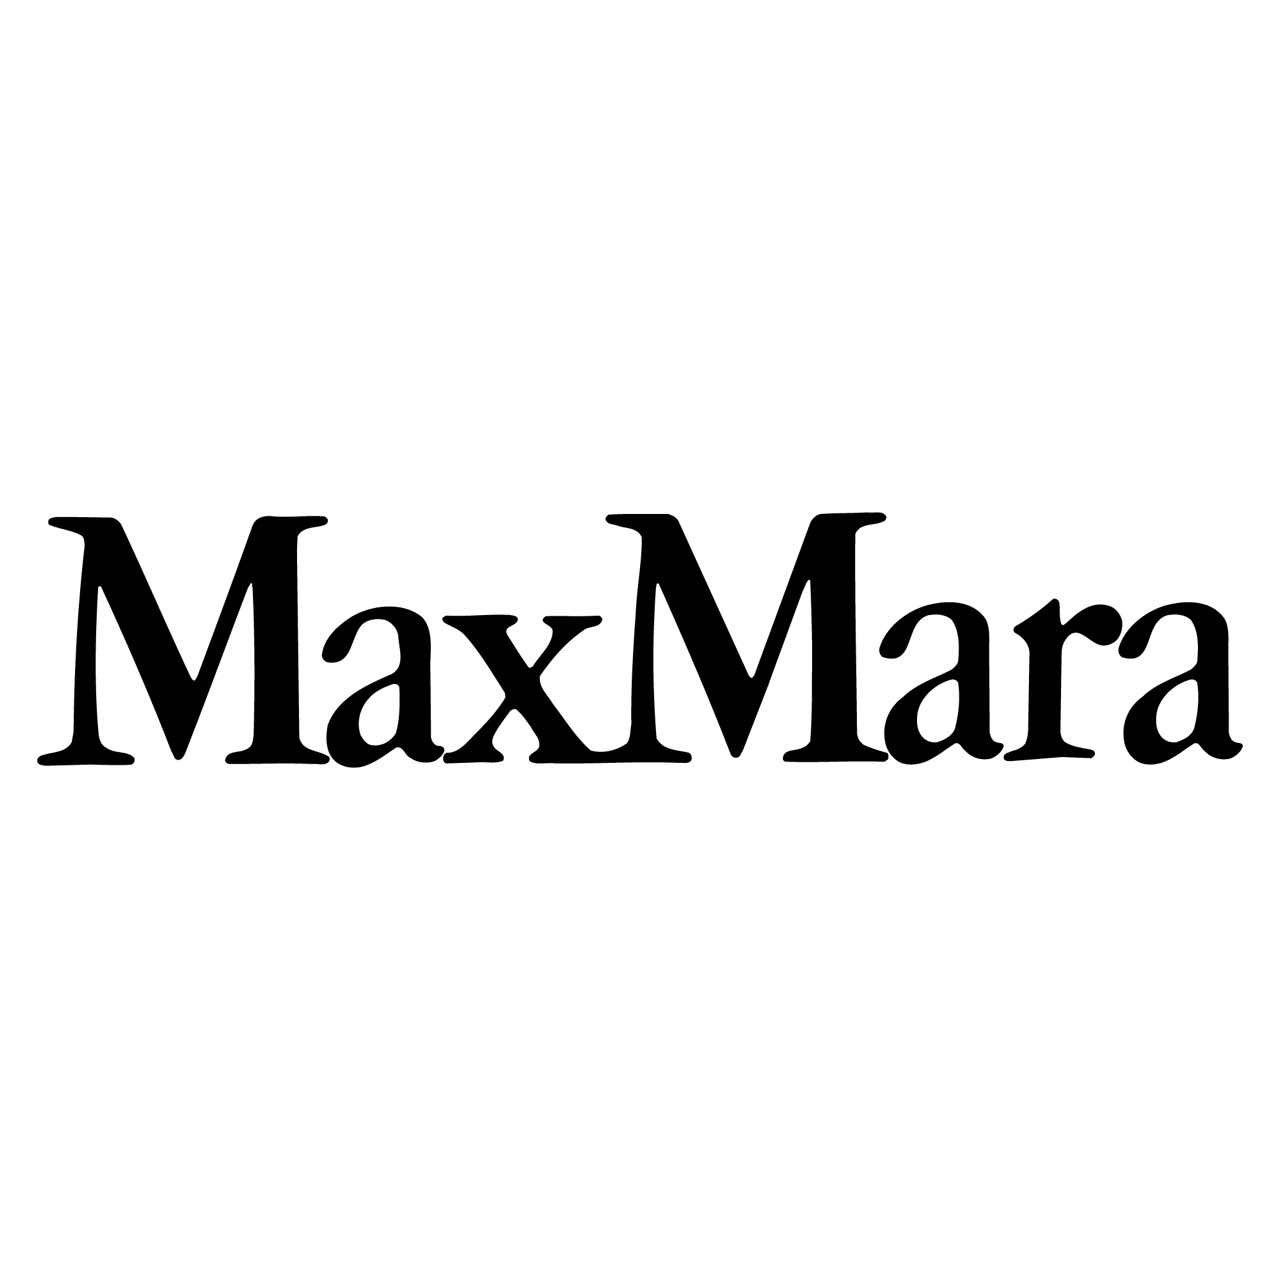 Max Mara - Abbigliamento donna Messina